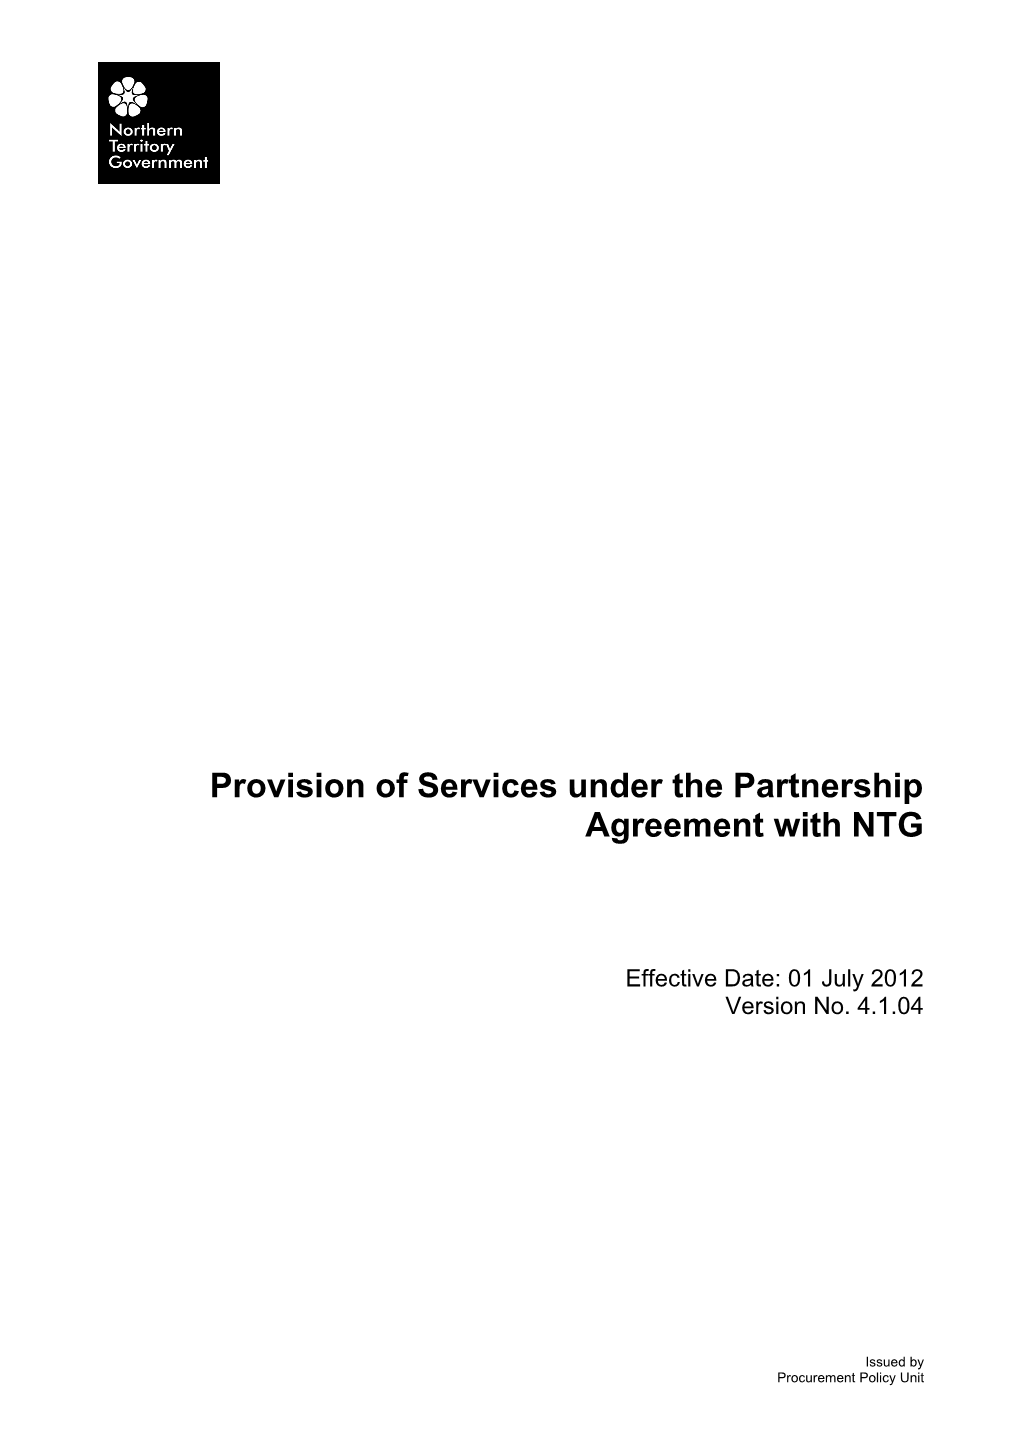 Services Under Partnership Agreement - V 4.1.04 (01 July 2012)